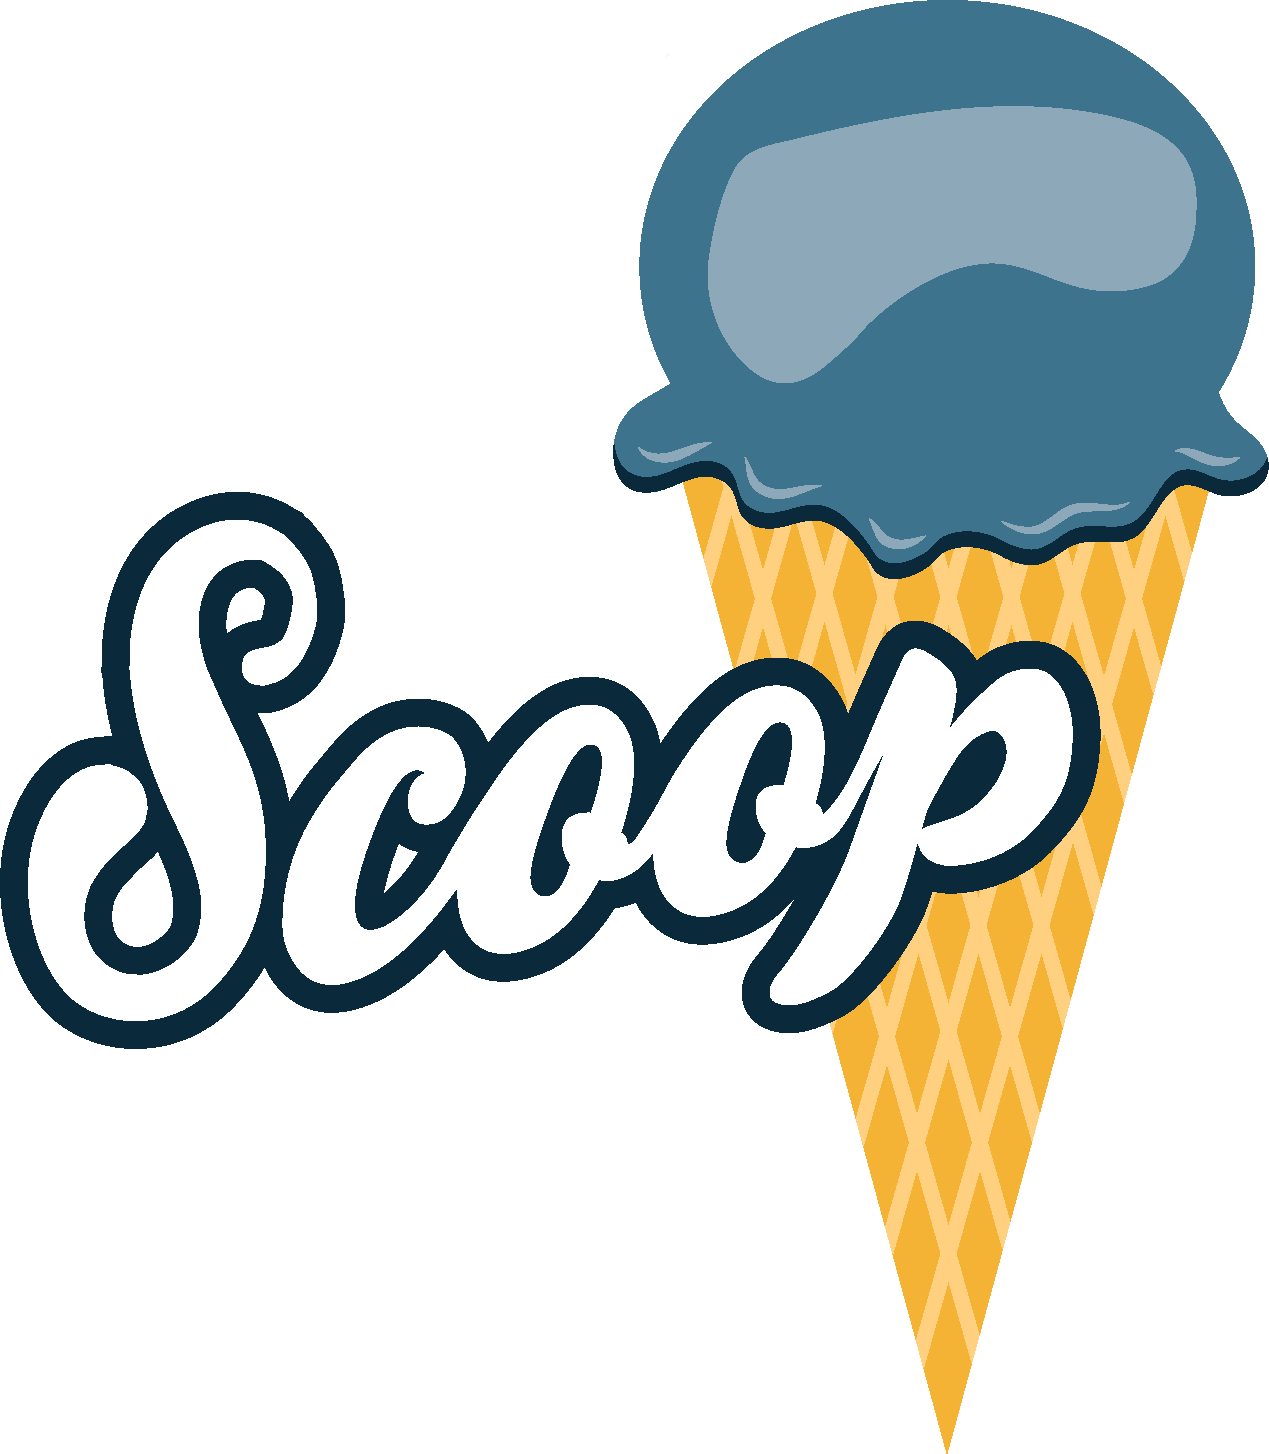 The Ohio Scoop